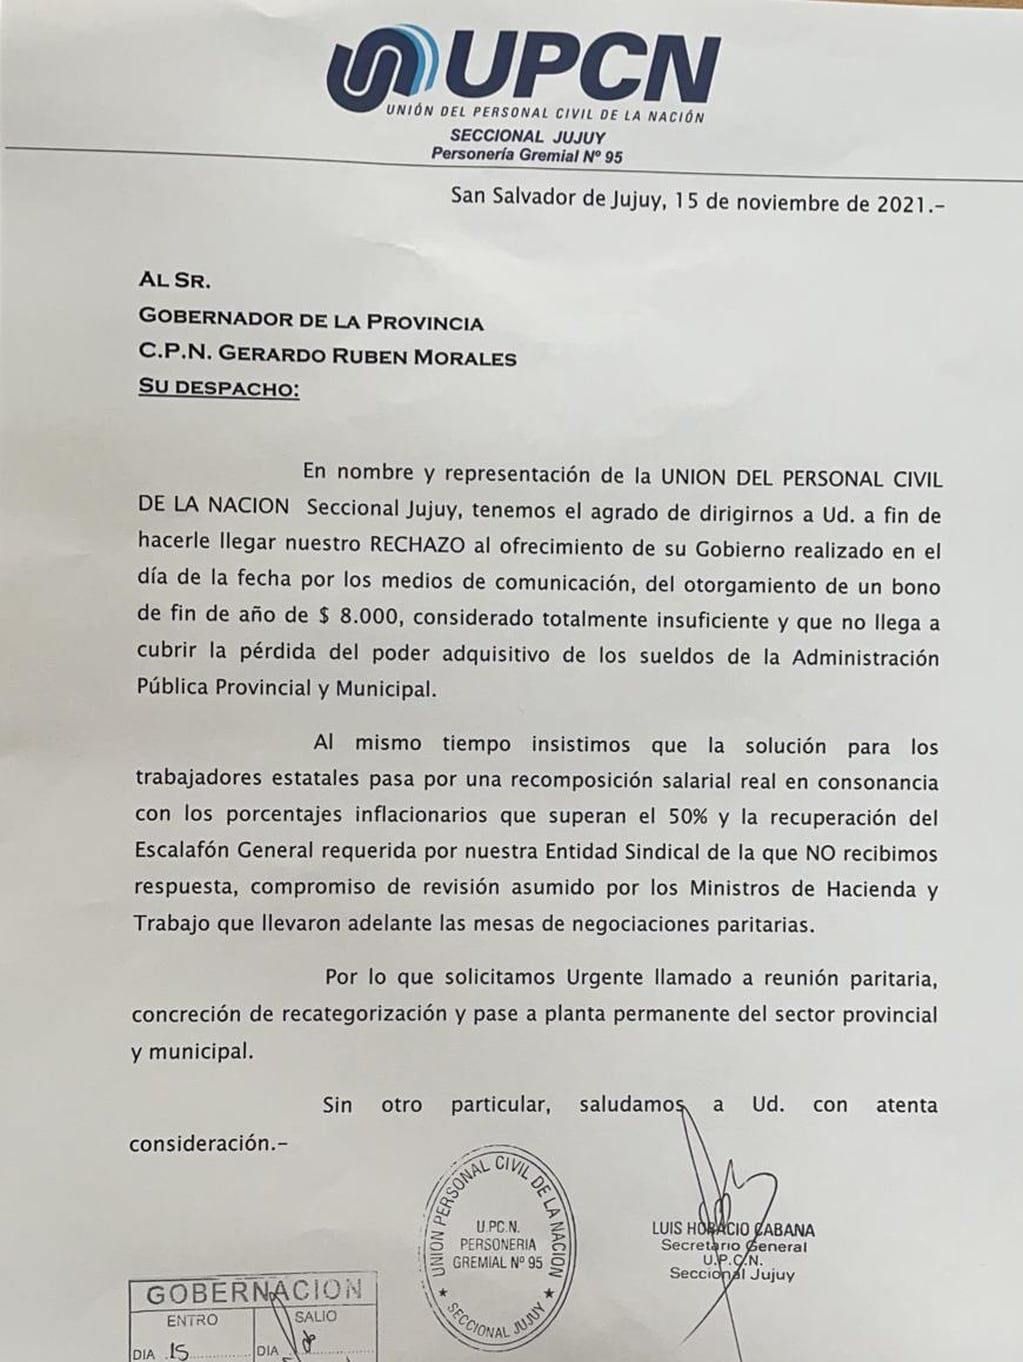 La nota cursada al Gobernador en la que UPCN Jujuy rechaza el bono de fin de año porque "no llega a cubrir la pérdida del poder adquisitivo de los sueldos de la administración pública provincial y municipal".